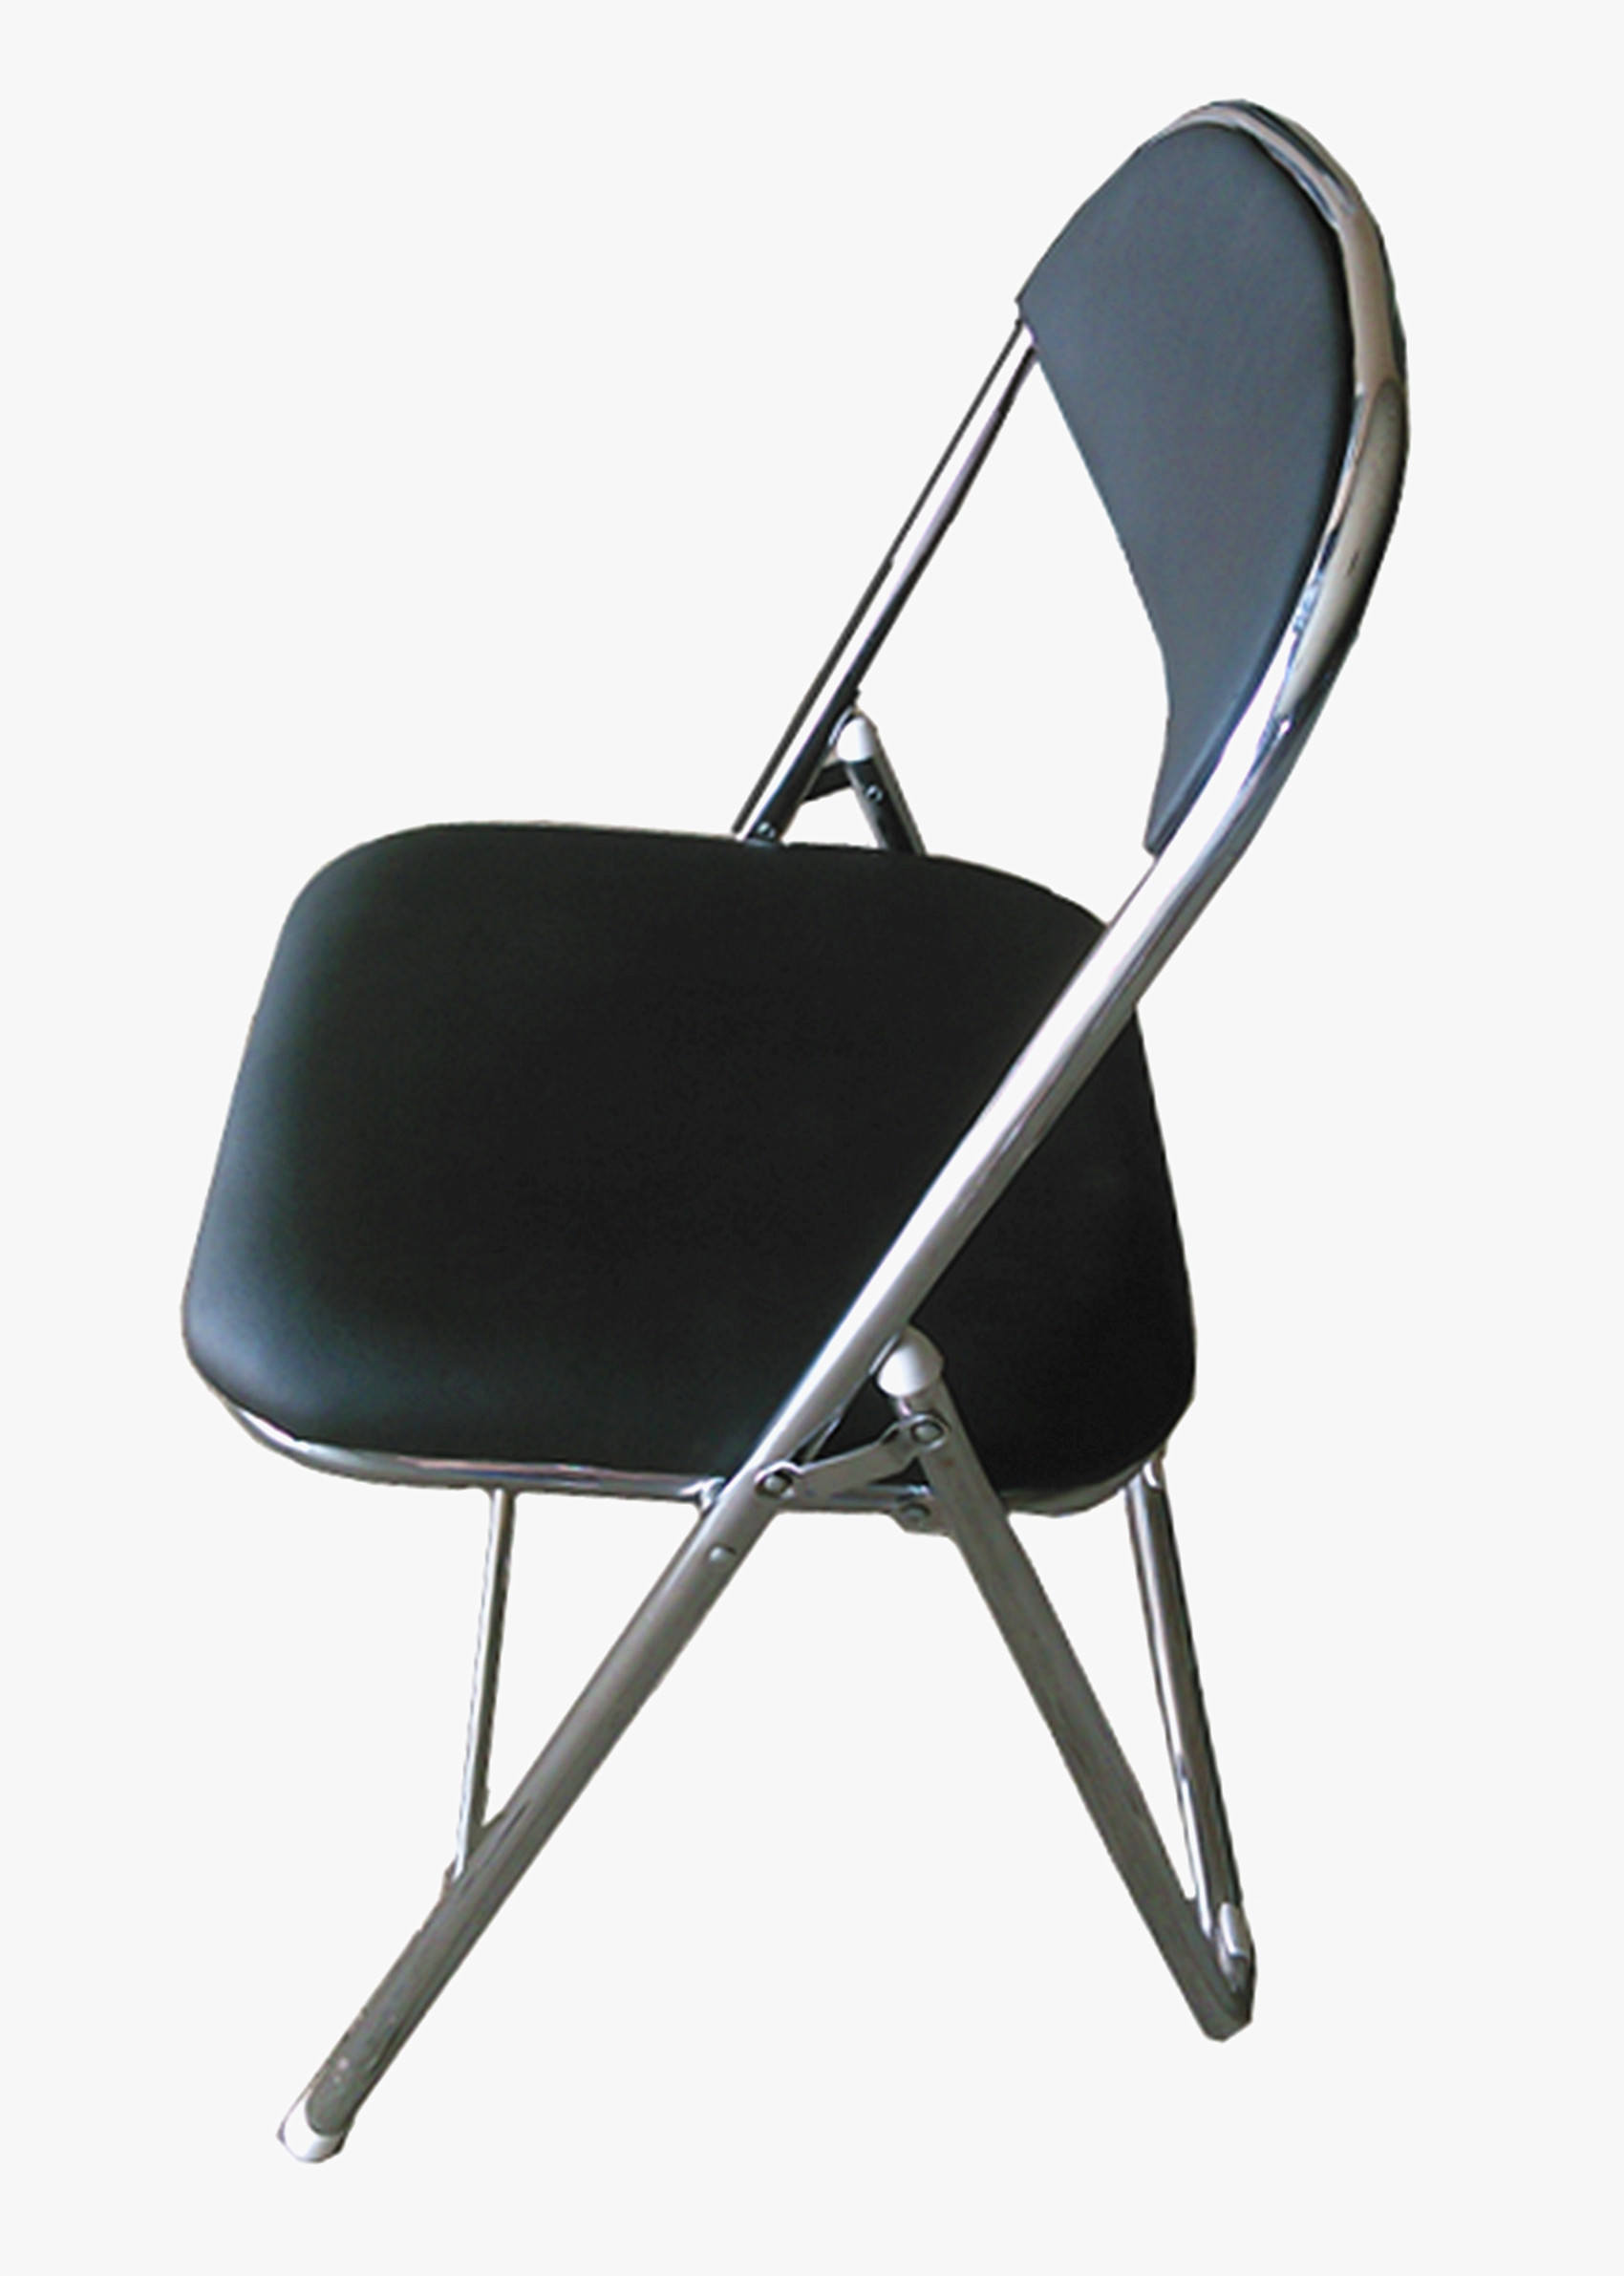 Black Padded Chrome Framed Folding Chair Melbourne Table